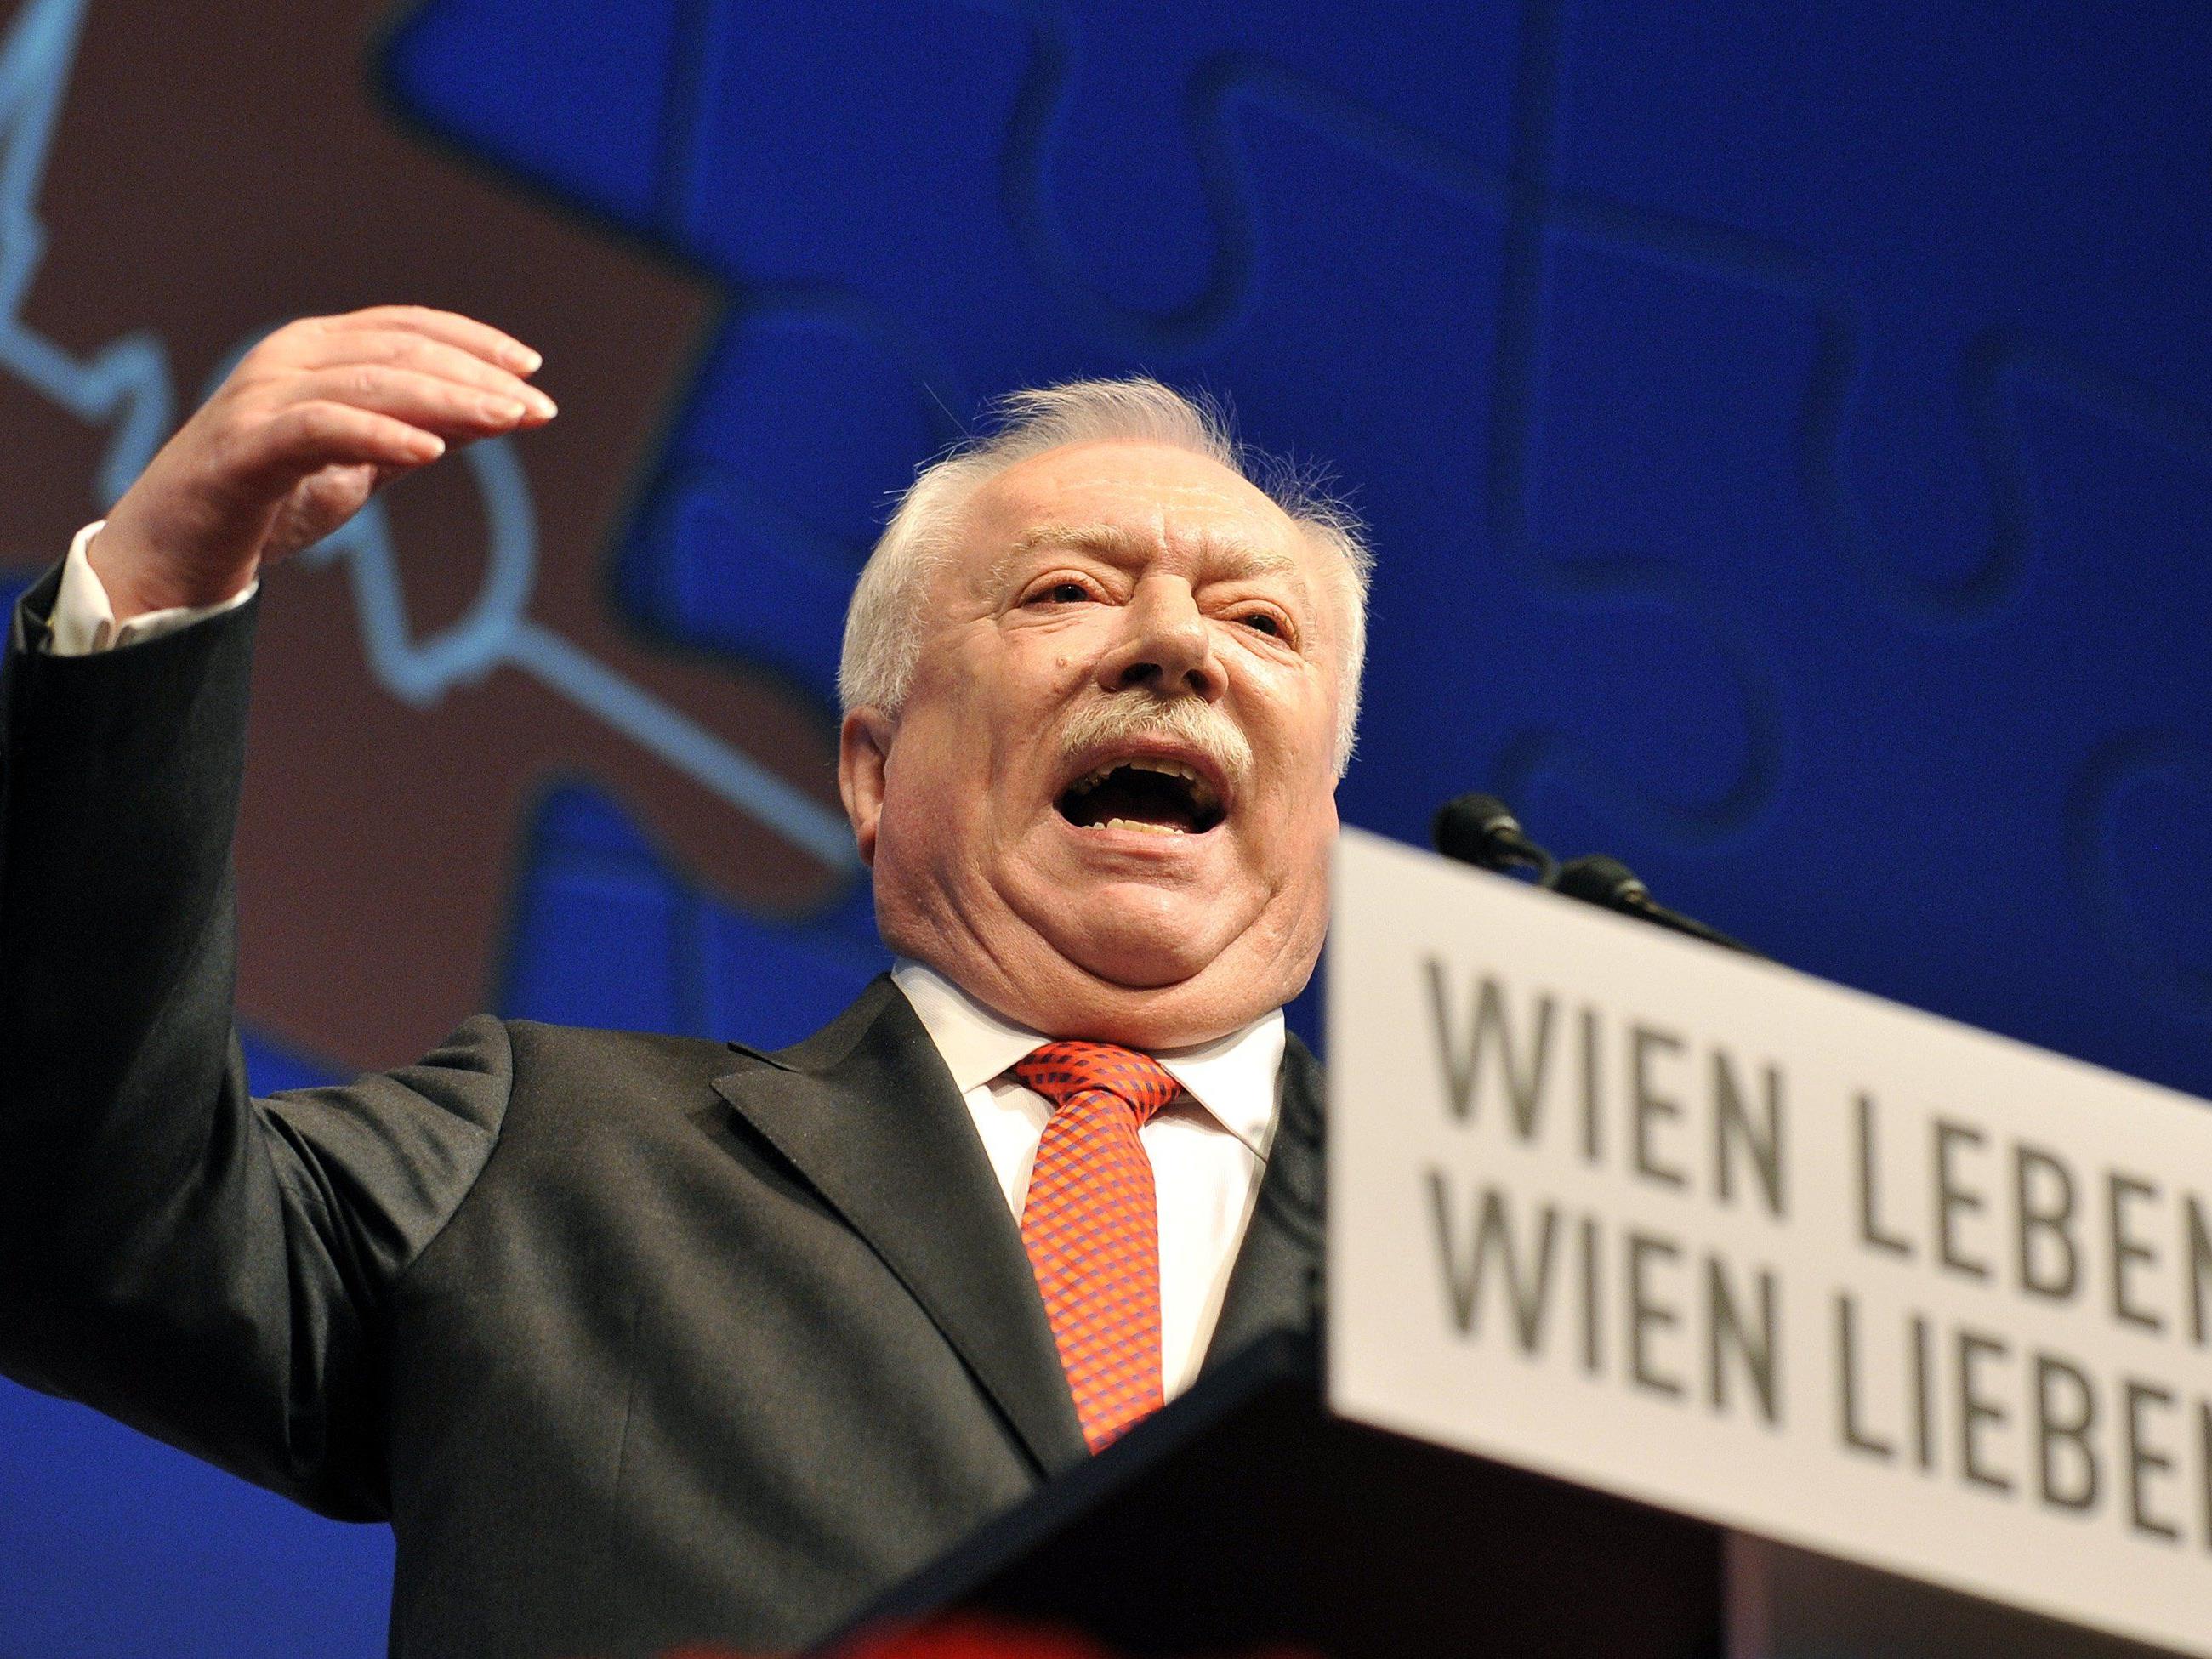 Wiens Bürgermeister Michael Häupl (SPÖ) will das Thema Asyl bei der nächsten Landeshauptleutekonferenz in Kärnten diskutieren